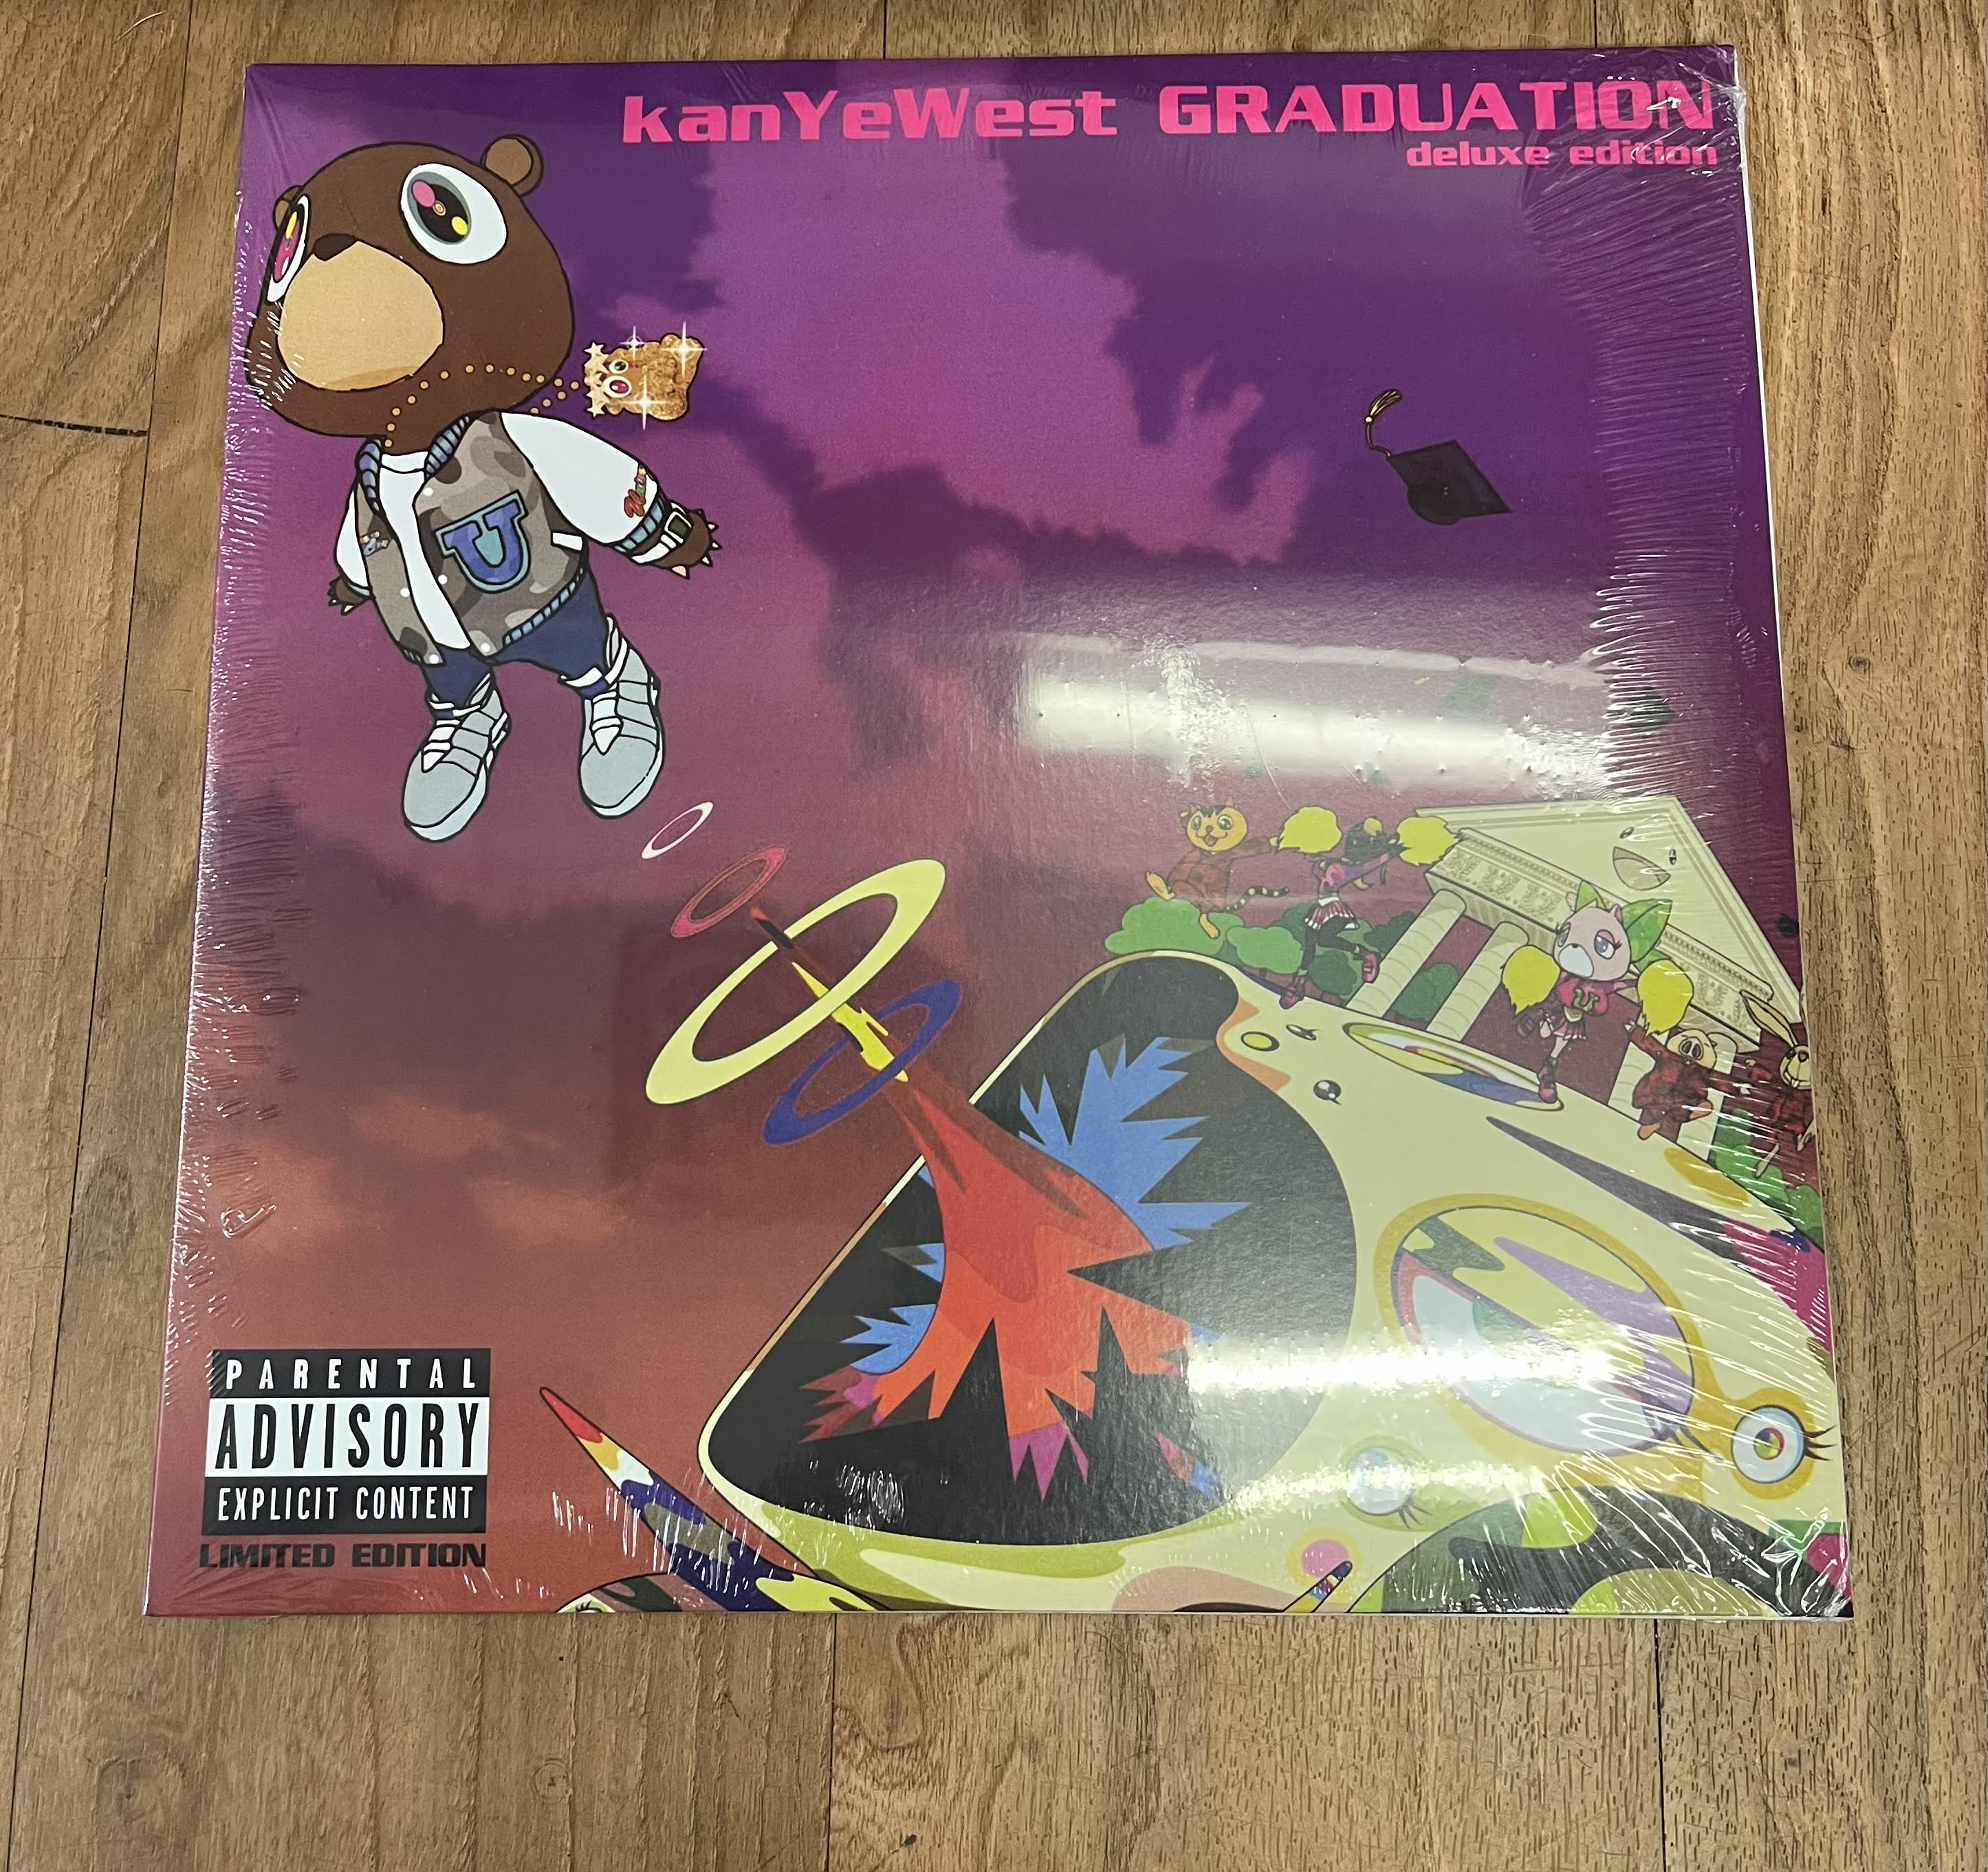 graduation kanye west vinyl